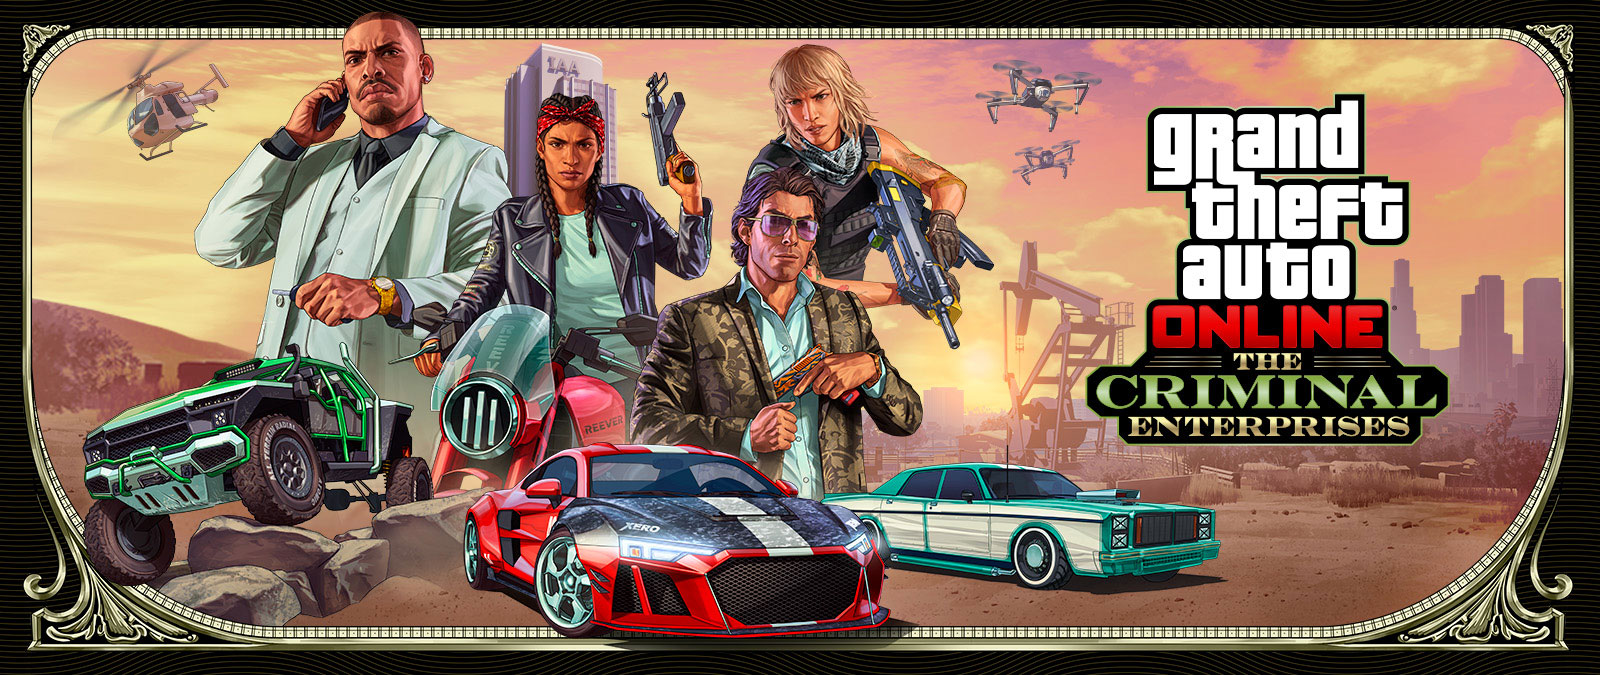 Grand Theft Auto Online: The Criminal Enterprises, tre stilige kjøretøy kjører gjennom forgrunnen mens fire figurer poserer ovenfor.